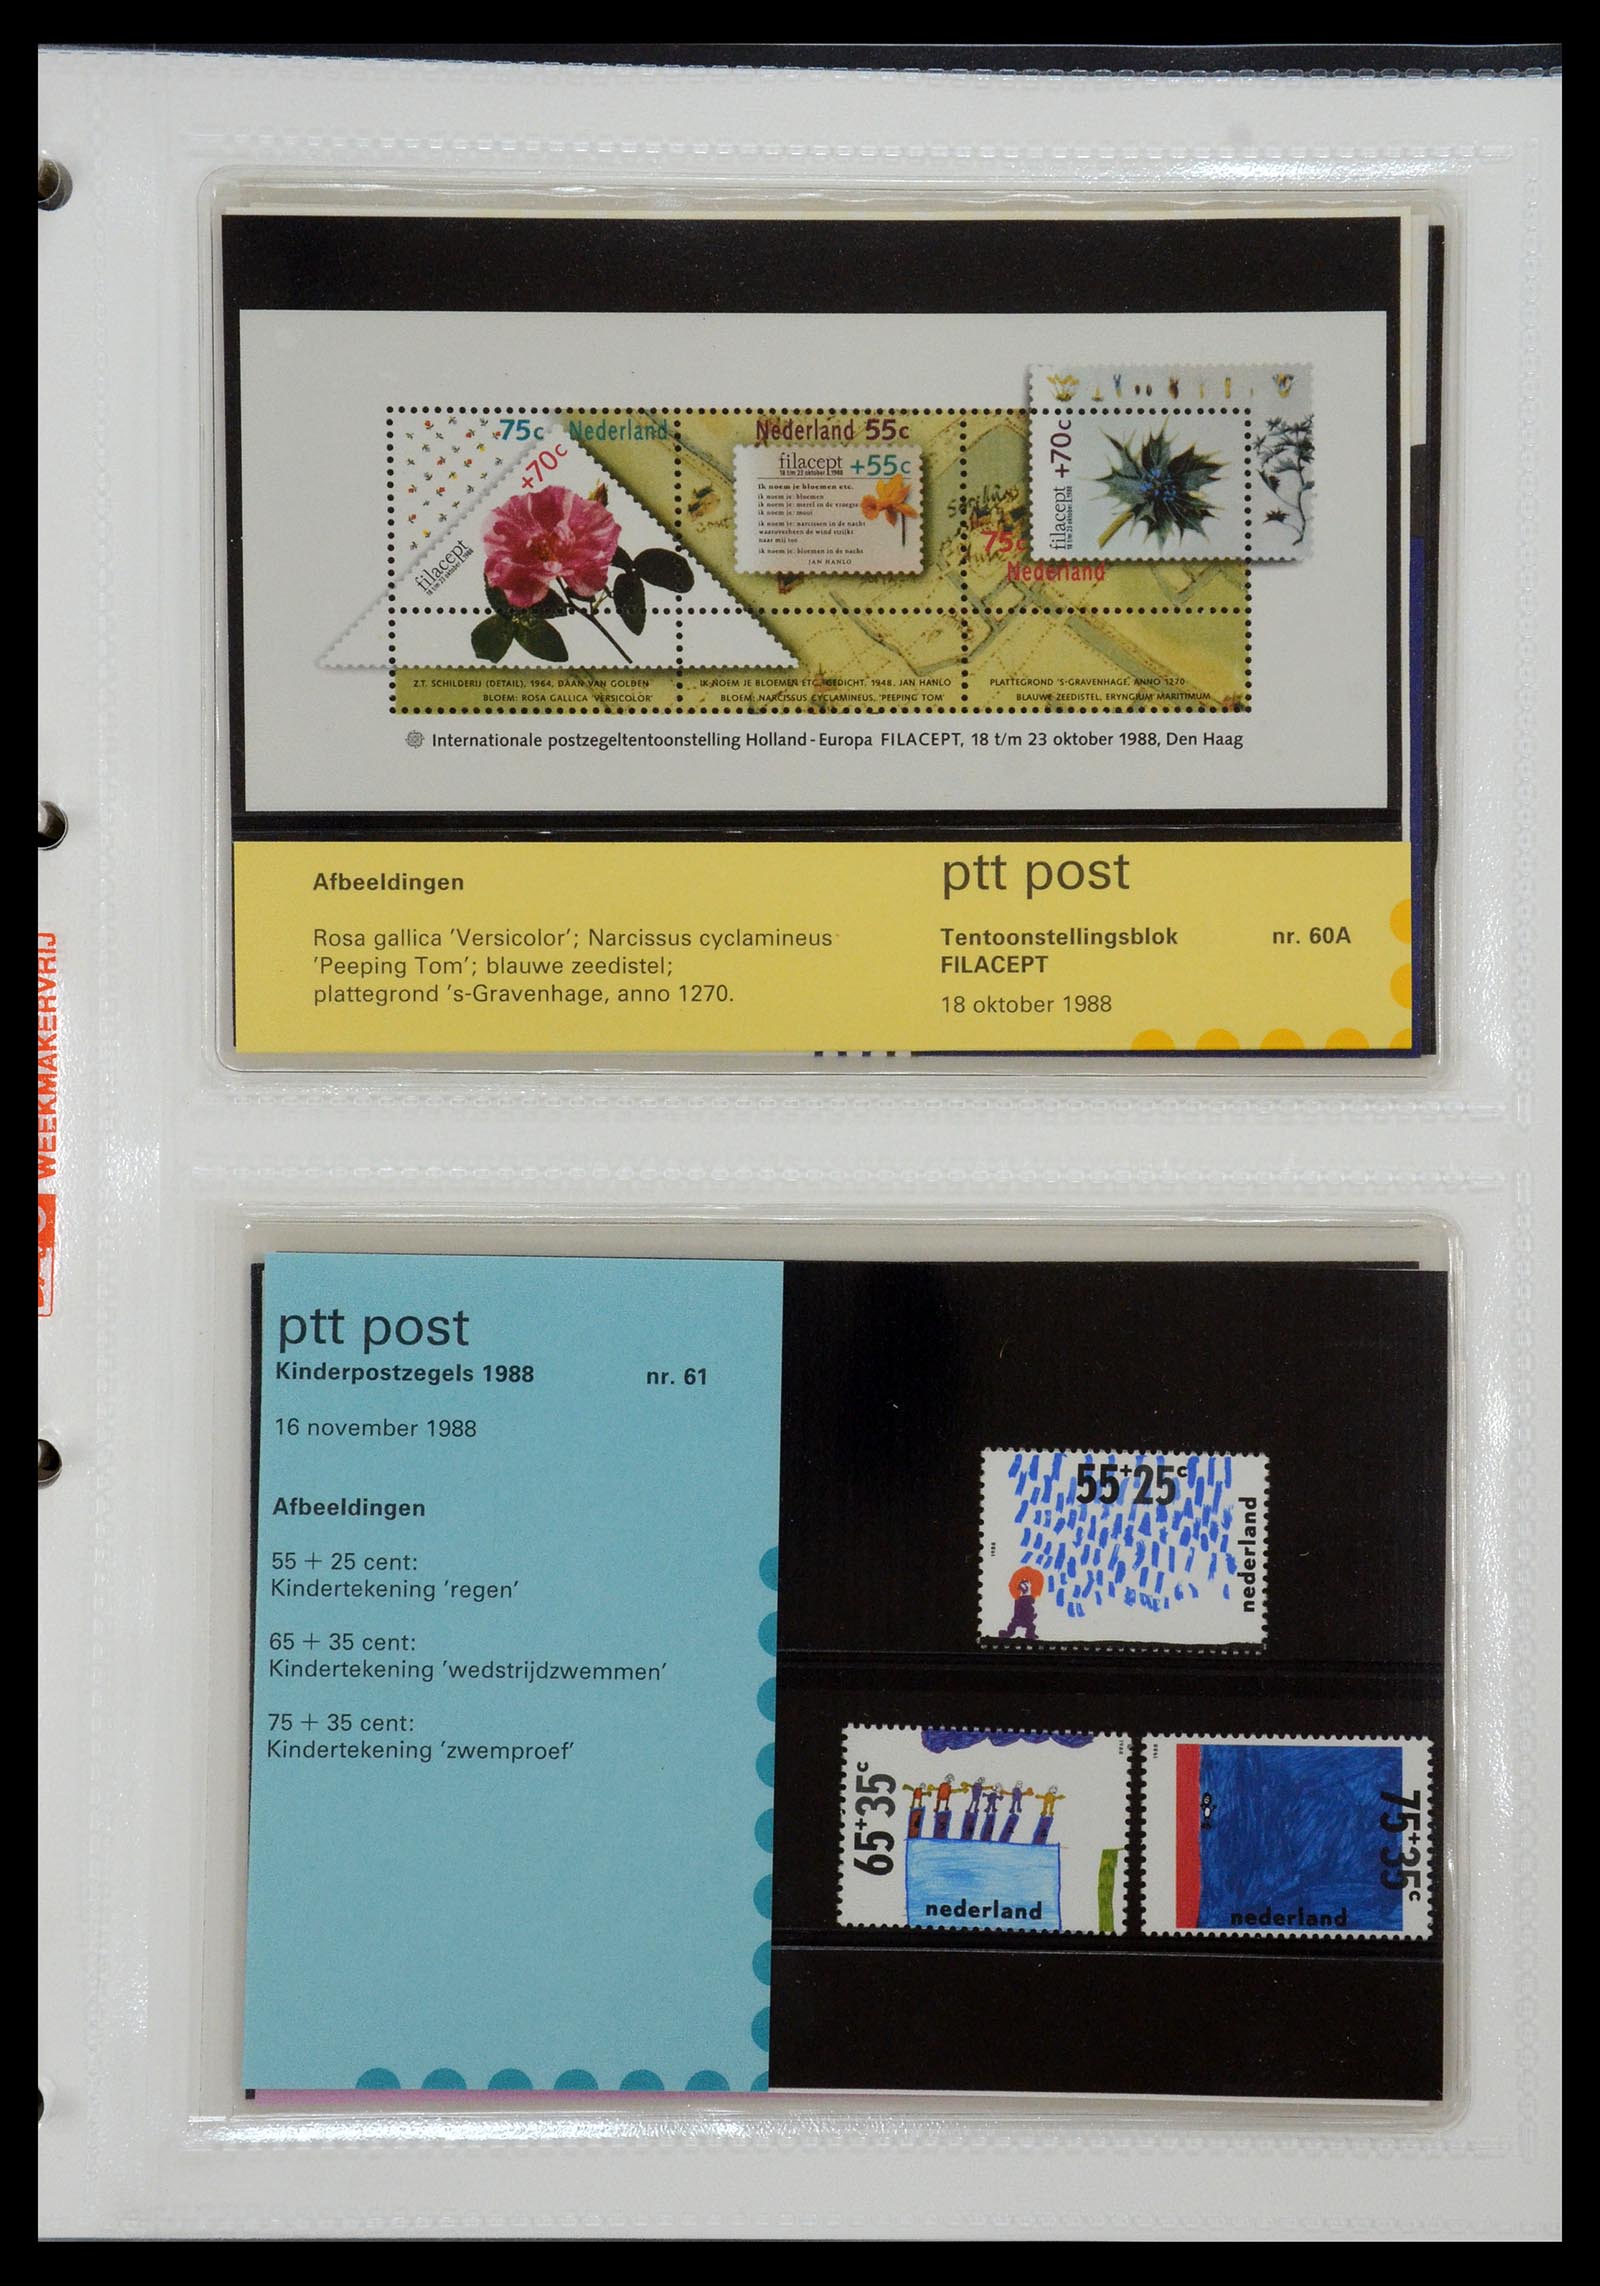 35144 031 - Stamp Collection 35144 Netherlands PTT presentation packs 1982-2021!